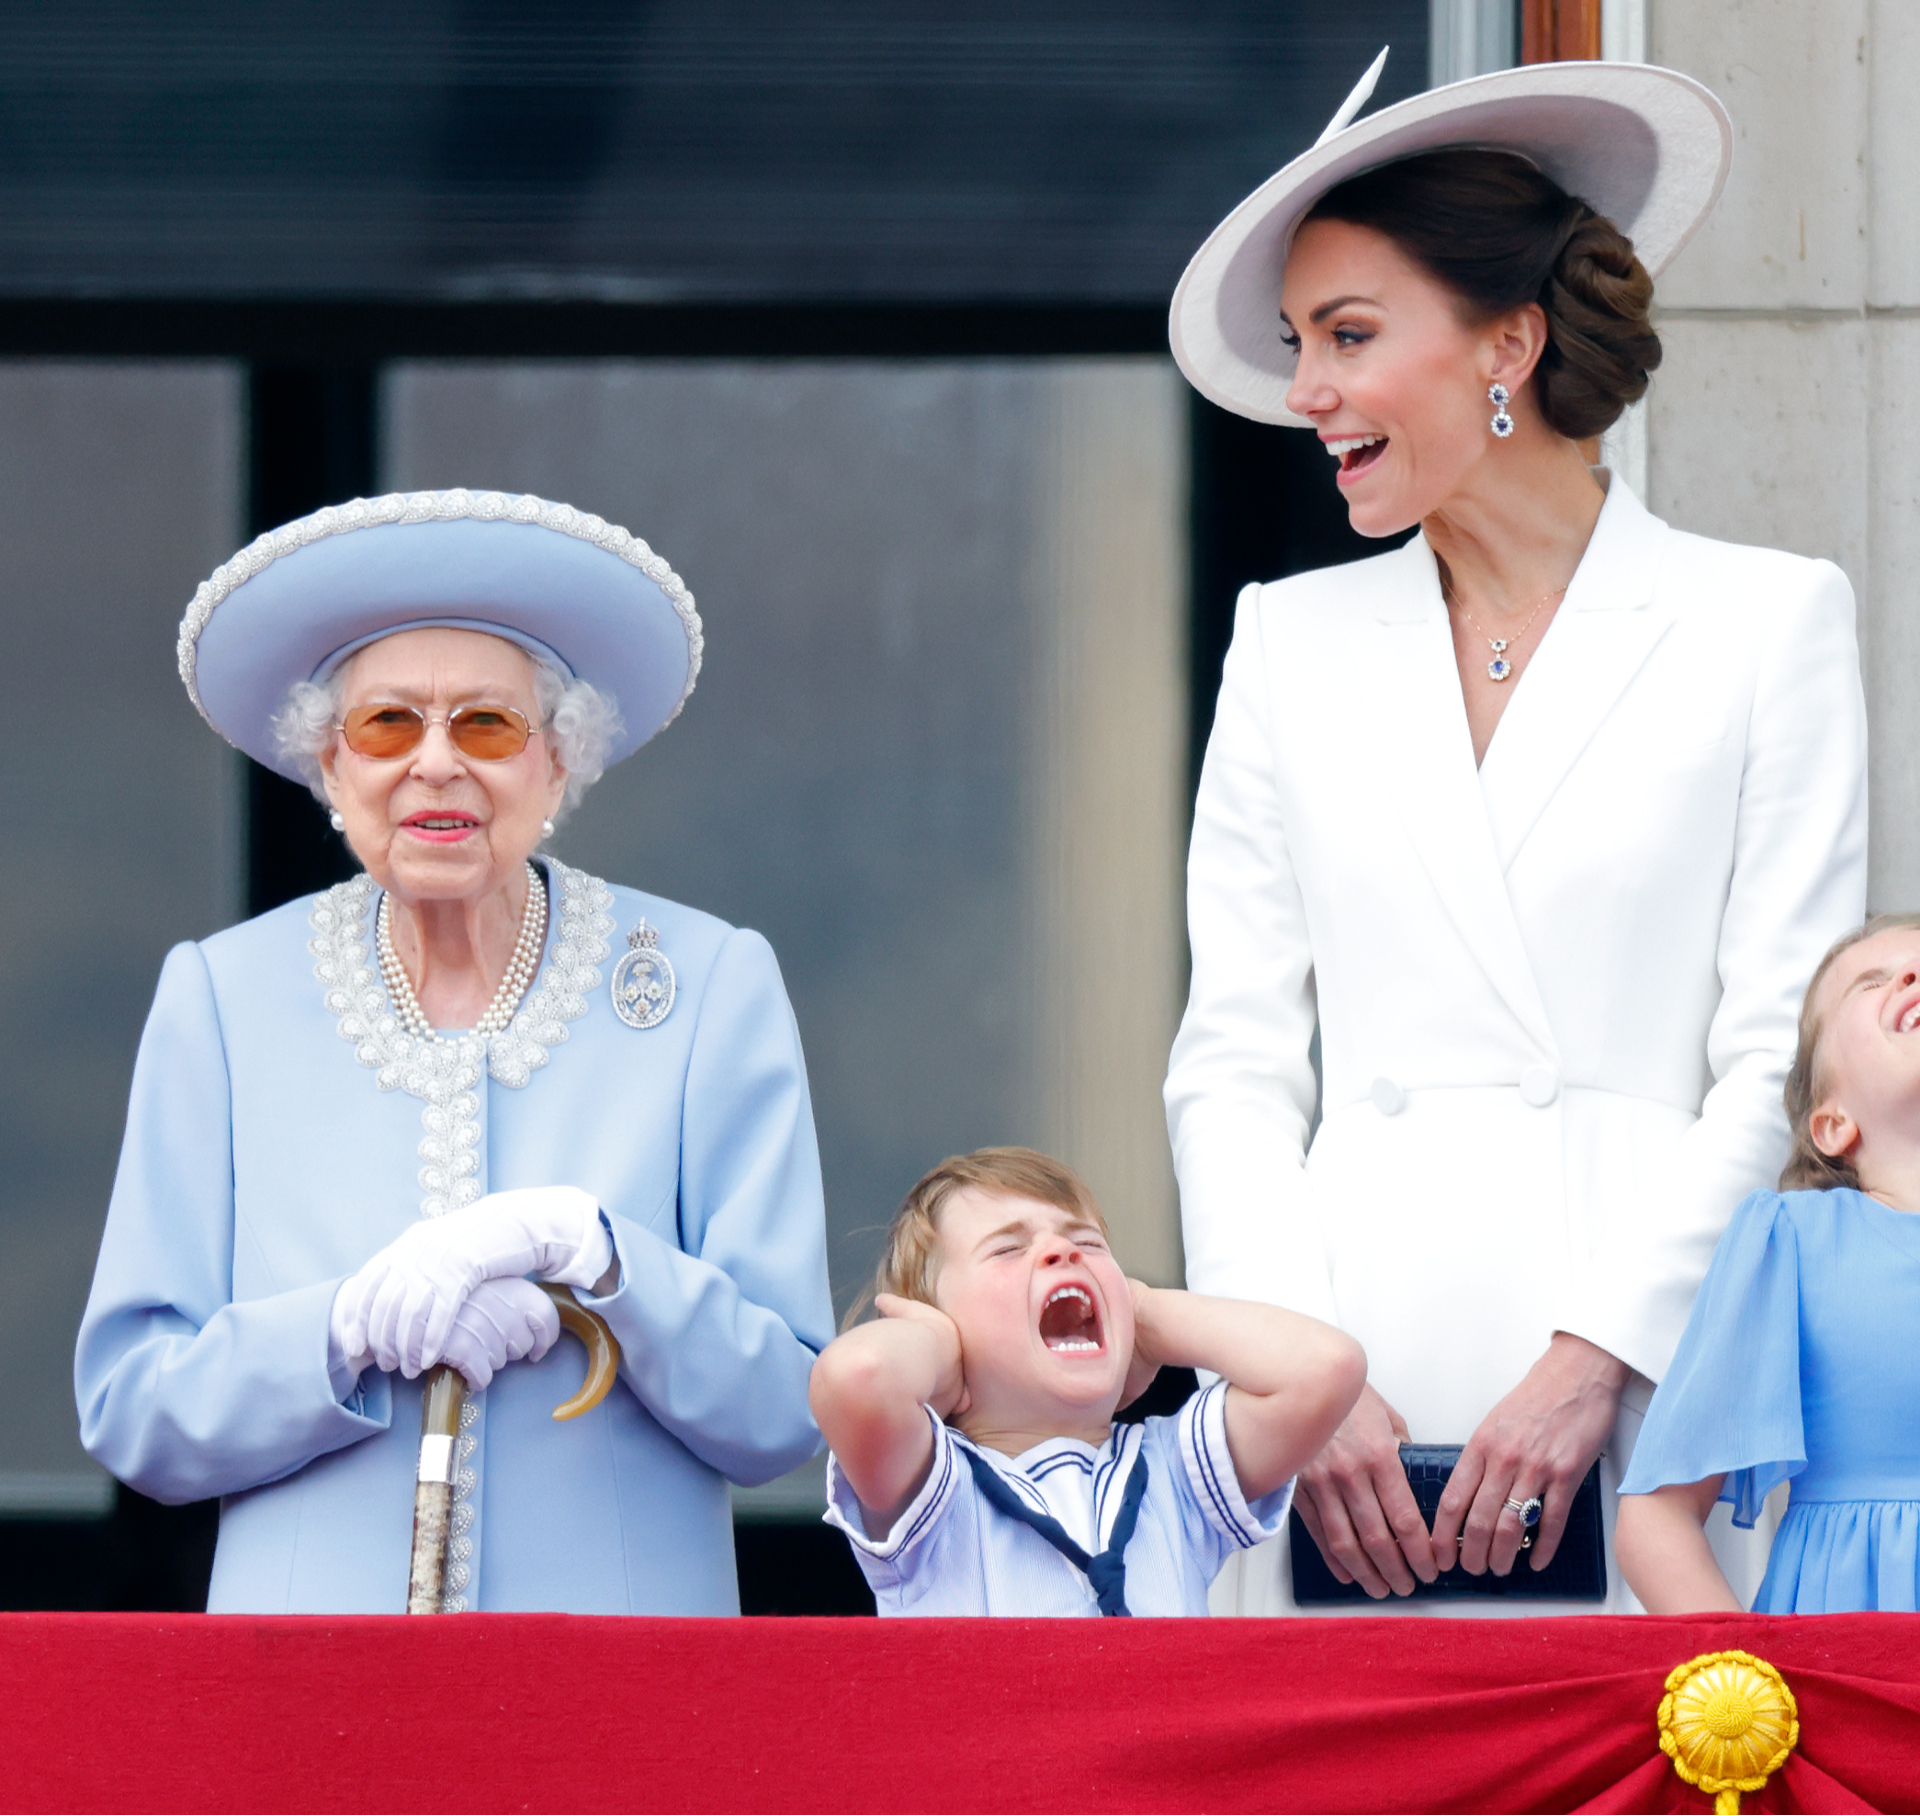 Королева Елизавета II, принц Луи Кембриджский, Кэтрин, герцогиня Кембриджская, принцесса Шарлотта Кембриджская на балконе Букингемского дворца во время пролета Королевских ВВС в ходе знаменного марша, 2 июня 2022